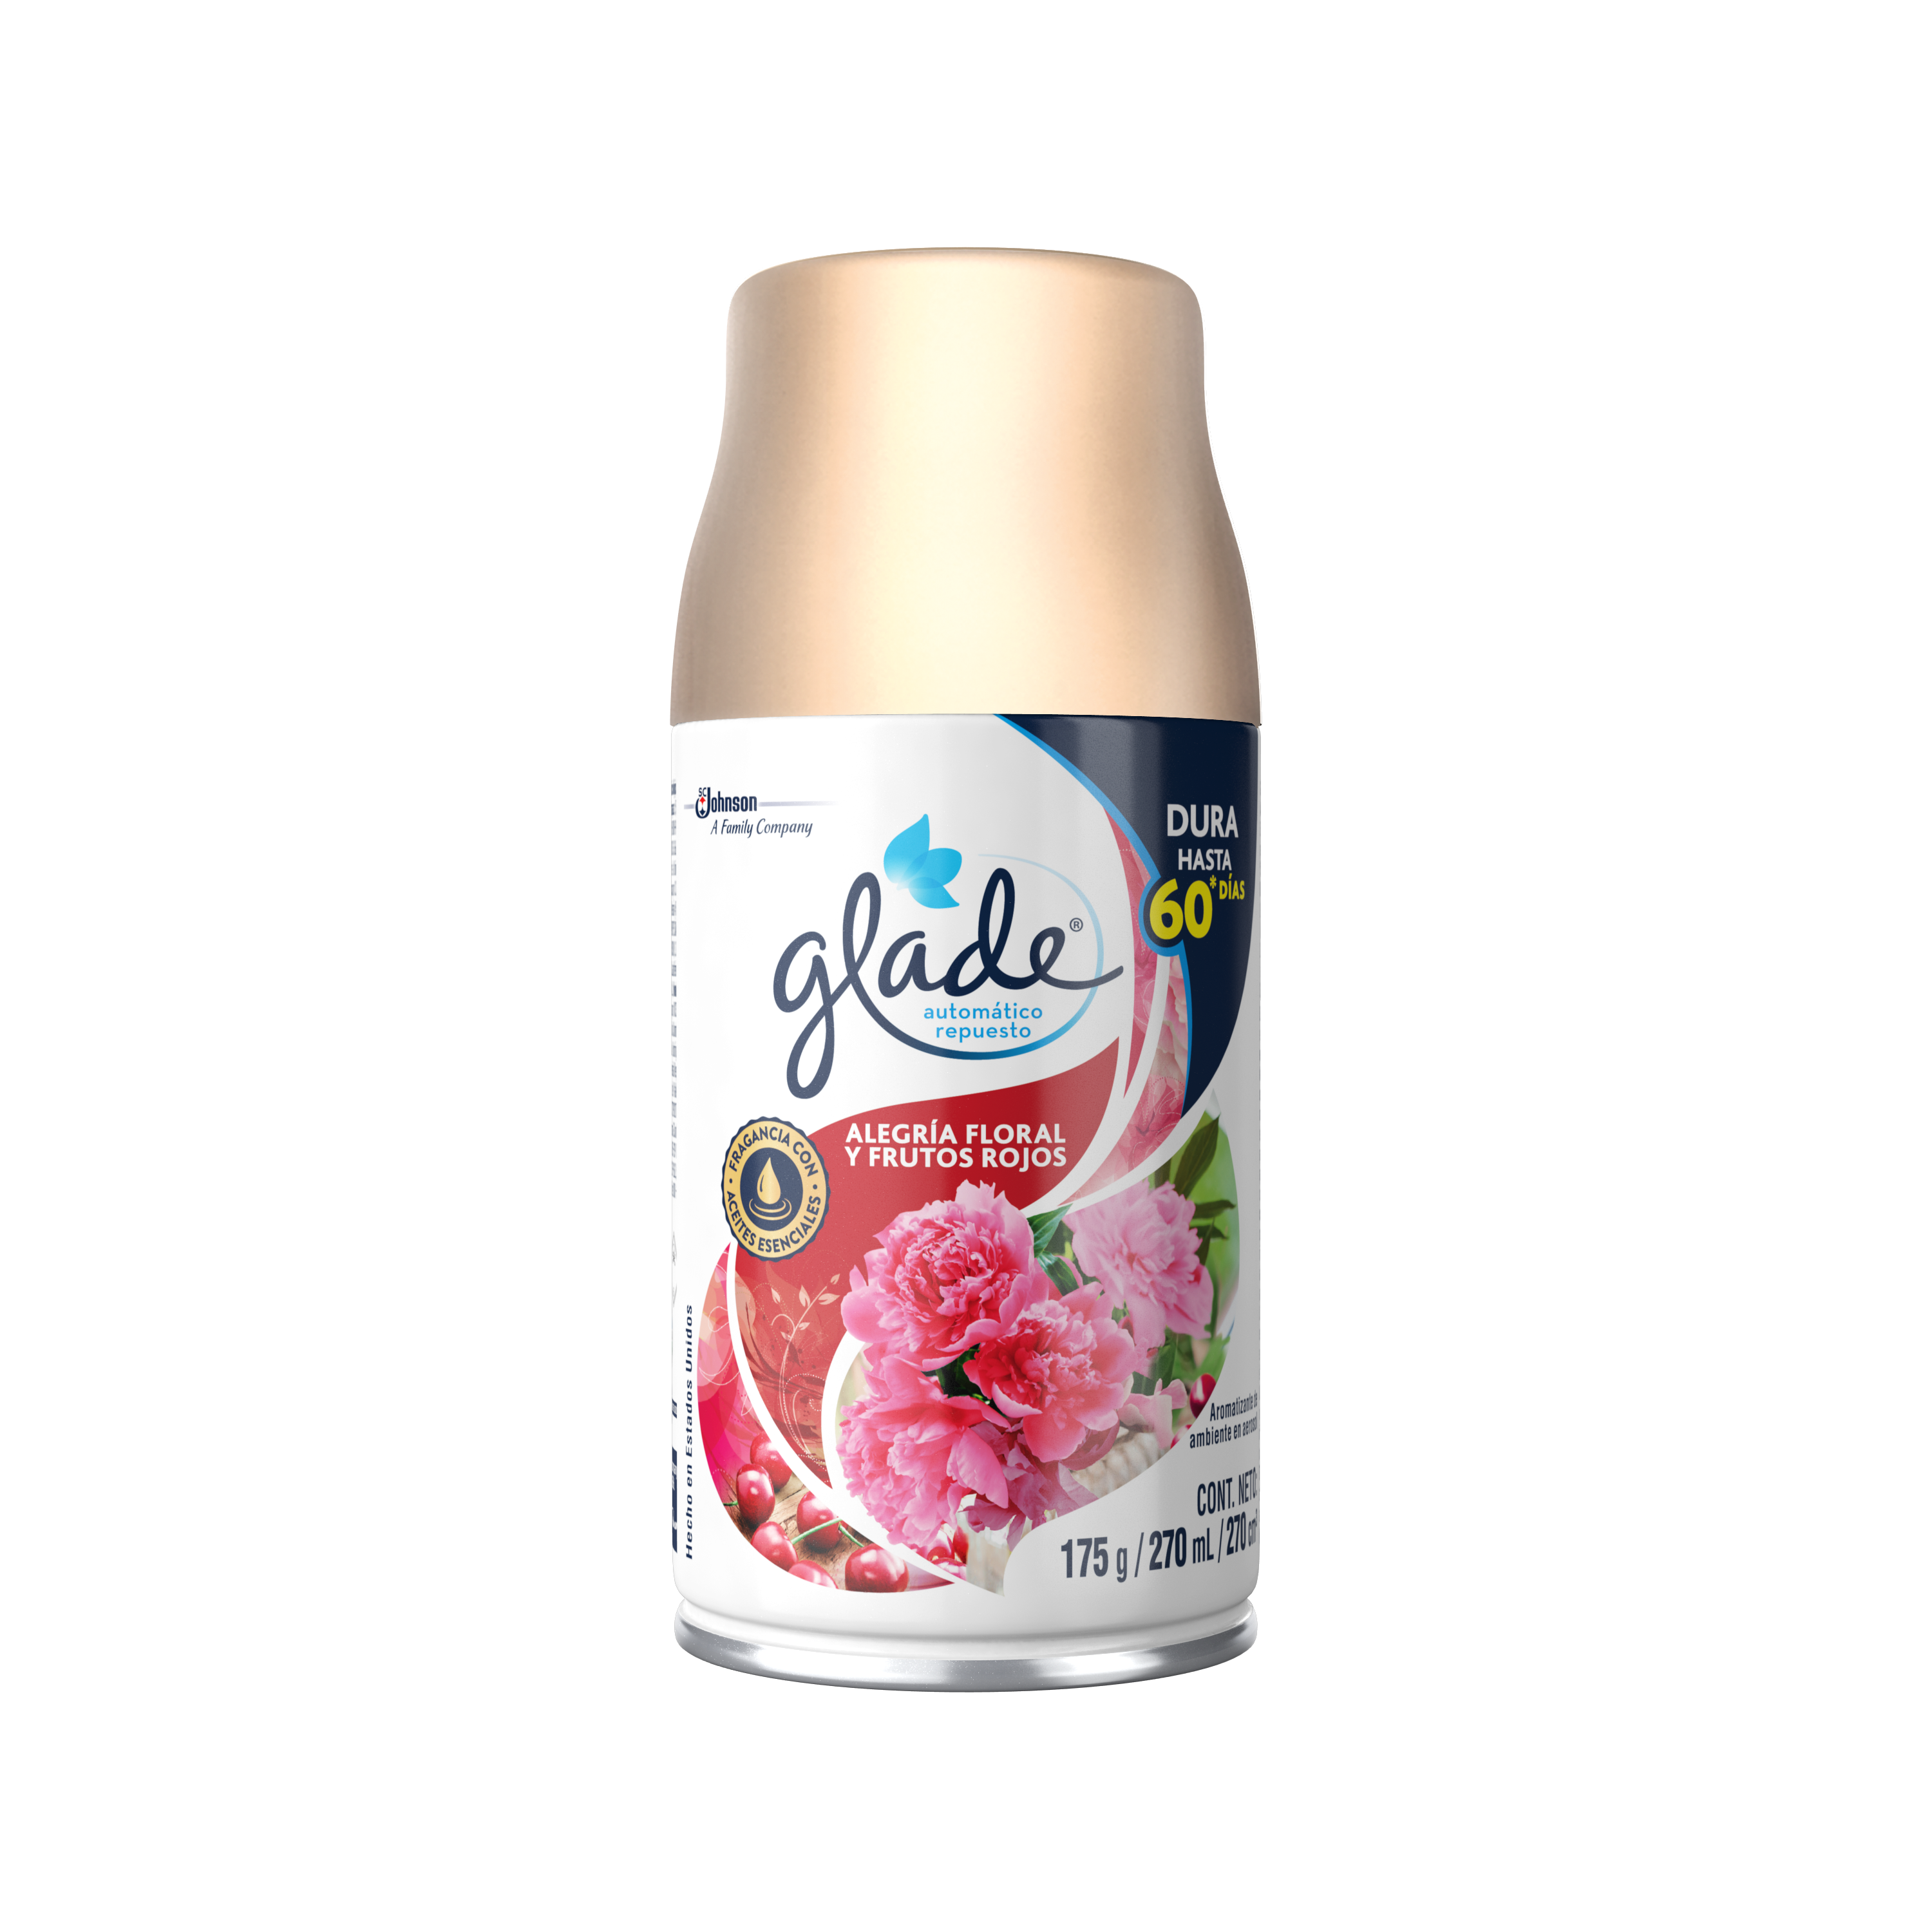 Glade® Automático Repuesto Alegría Floral y Frutos Rojos™